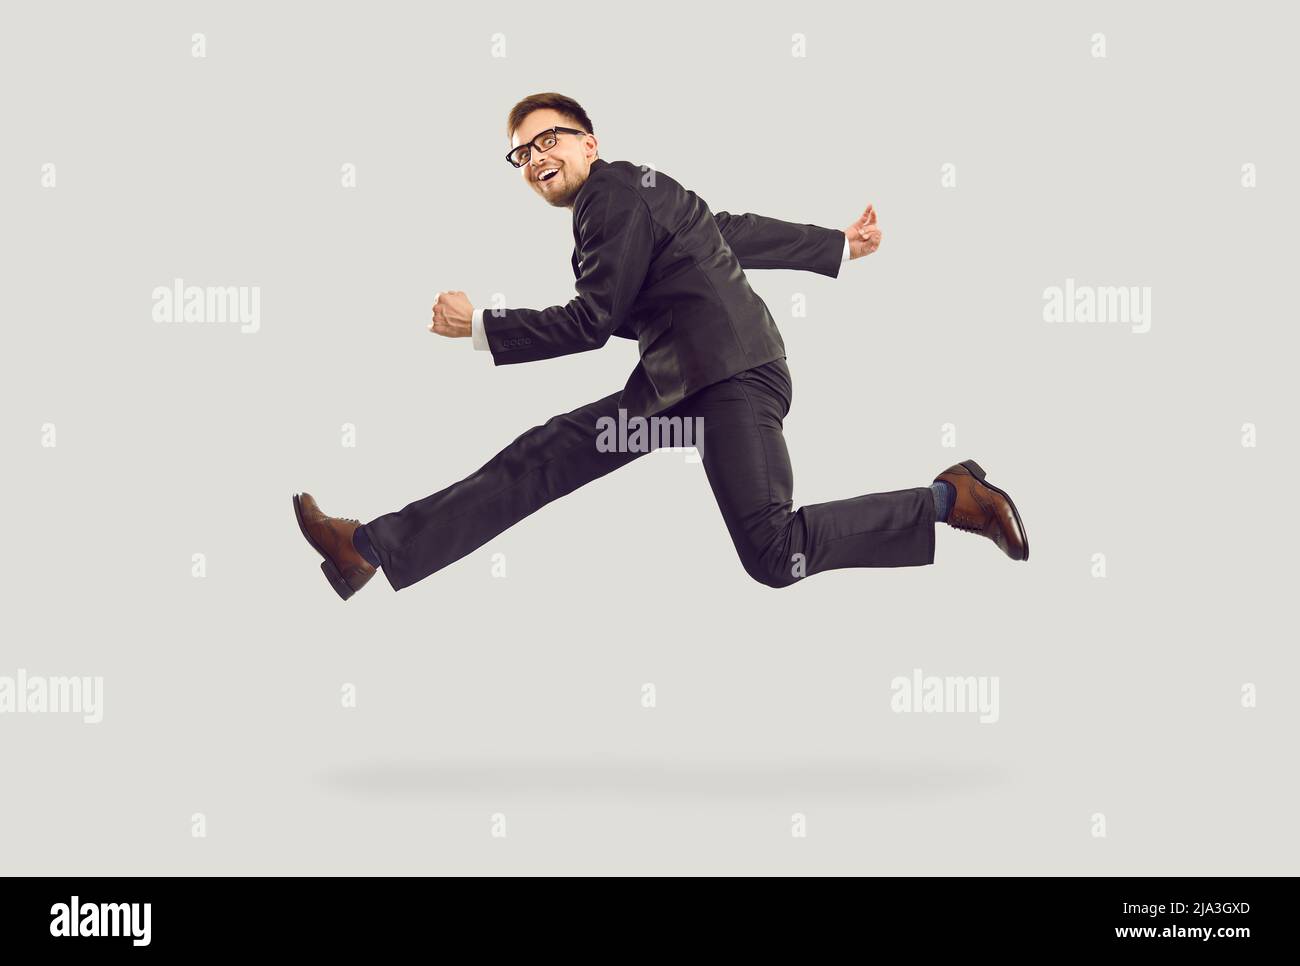 Folle eccitato giovane uomo d'affari in abito nero corsa e salto isolato su sfondo grigio. Foto Stock